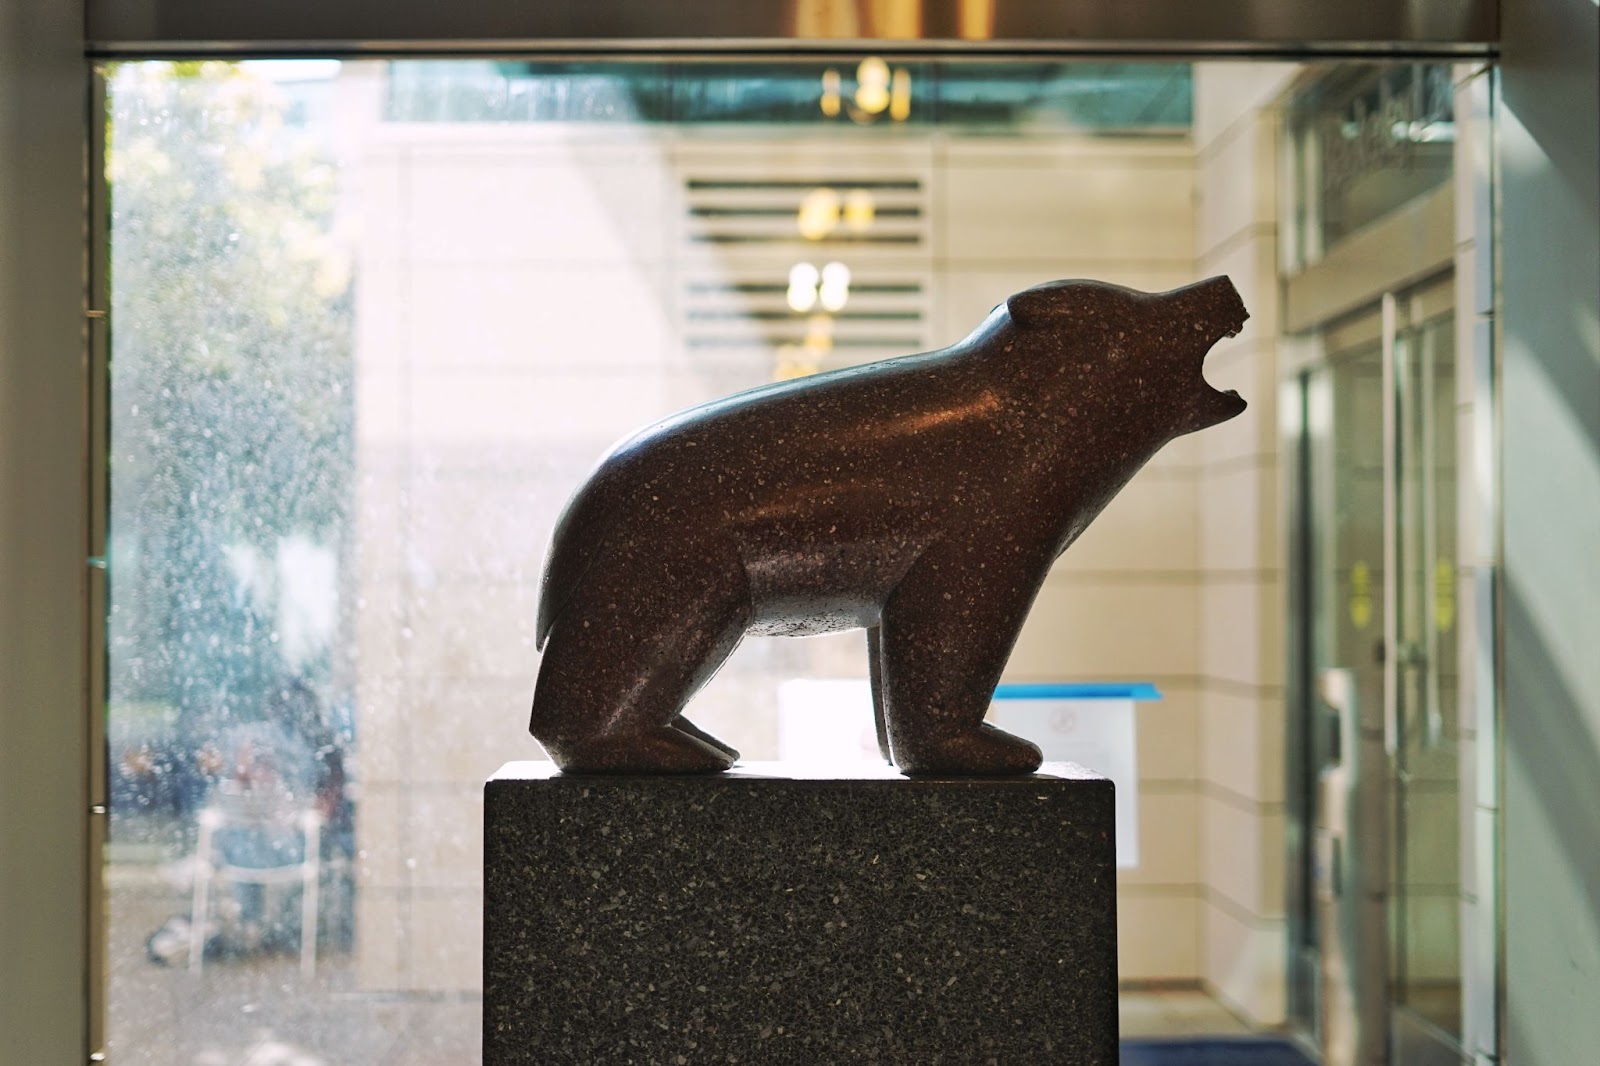 A roaring bear statue.